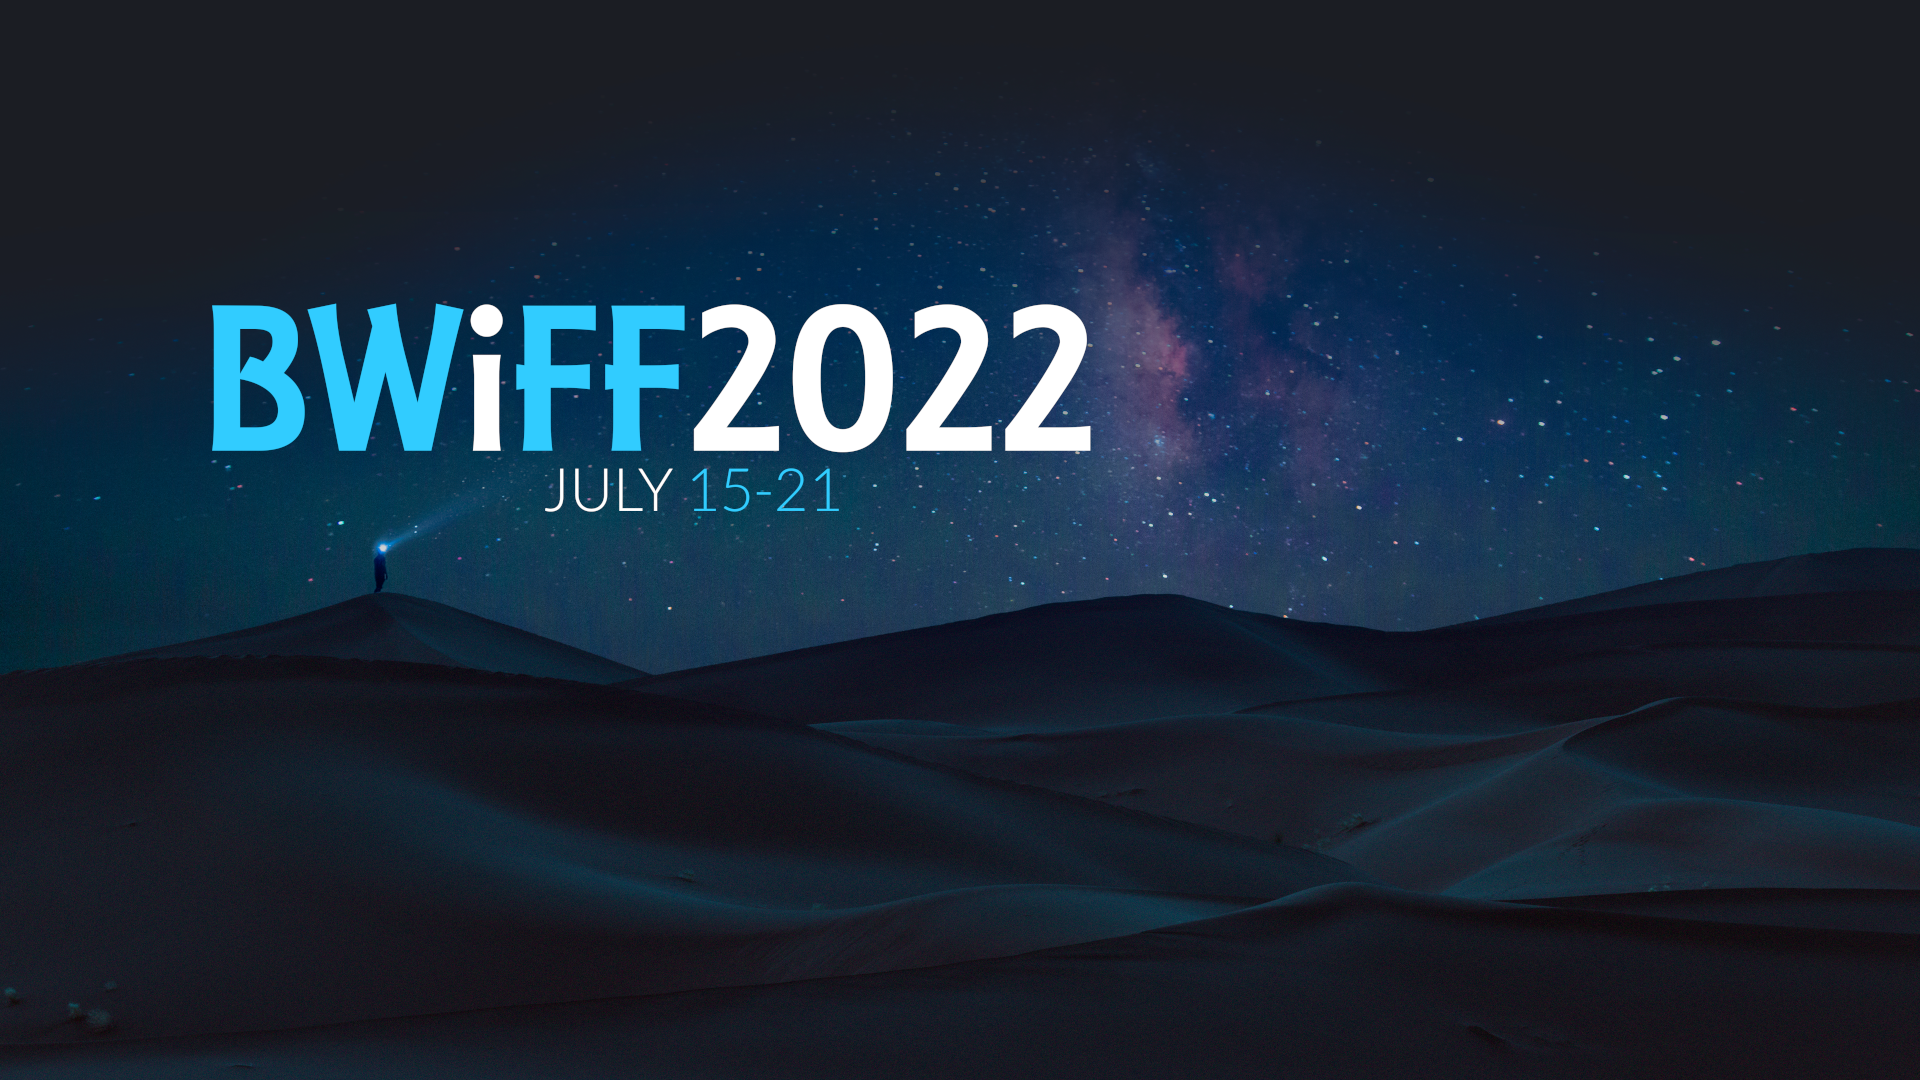 BWiFF 2022, July 15-21